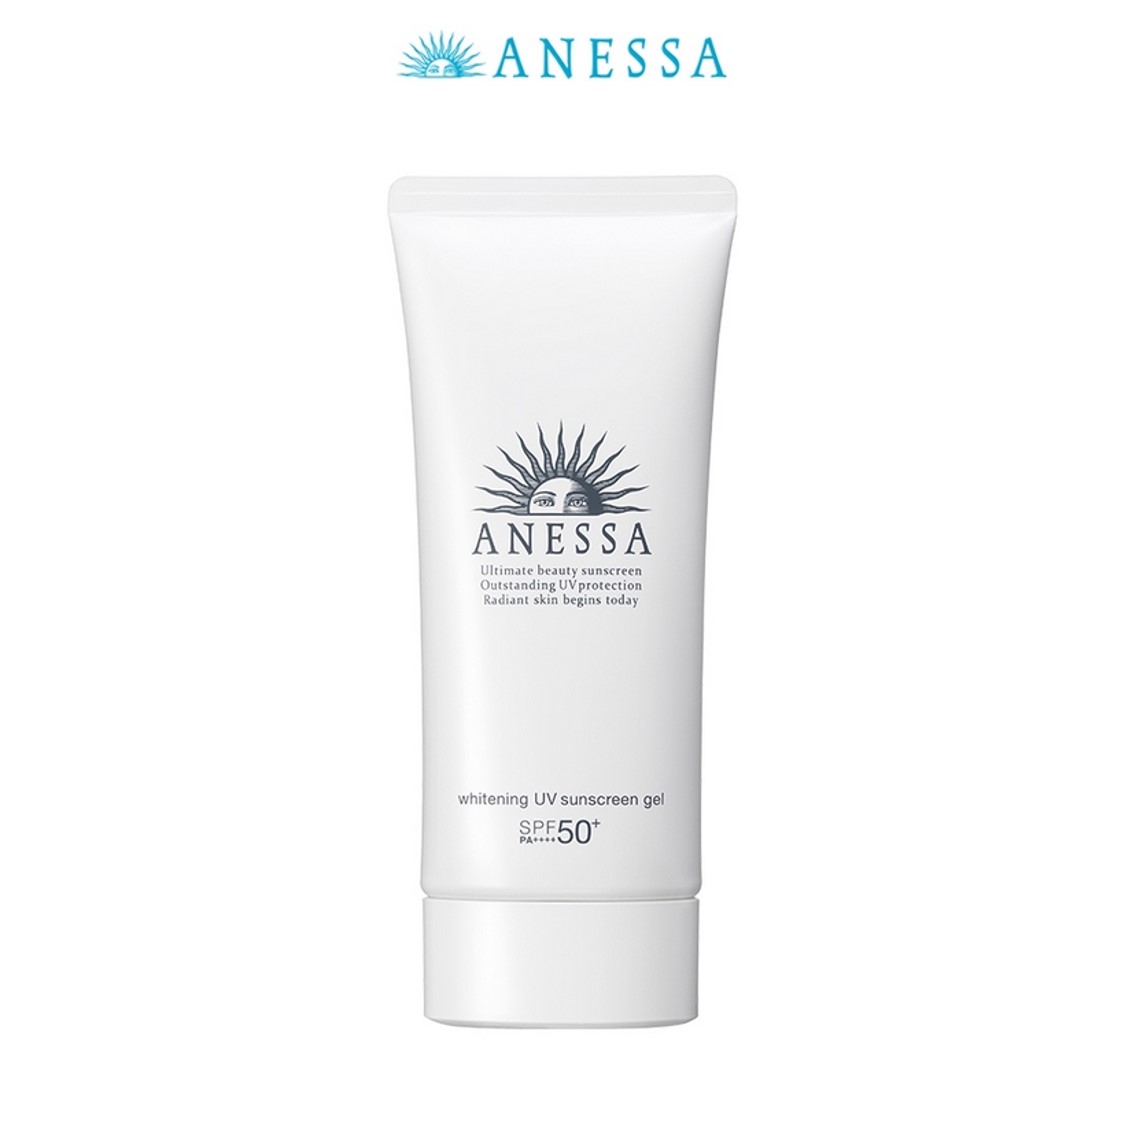 Kem chống nắng dưỡng trắng dạng gel Anessa Whitening UV Sunscreen Gel 90g - Mua 1 tặng 1